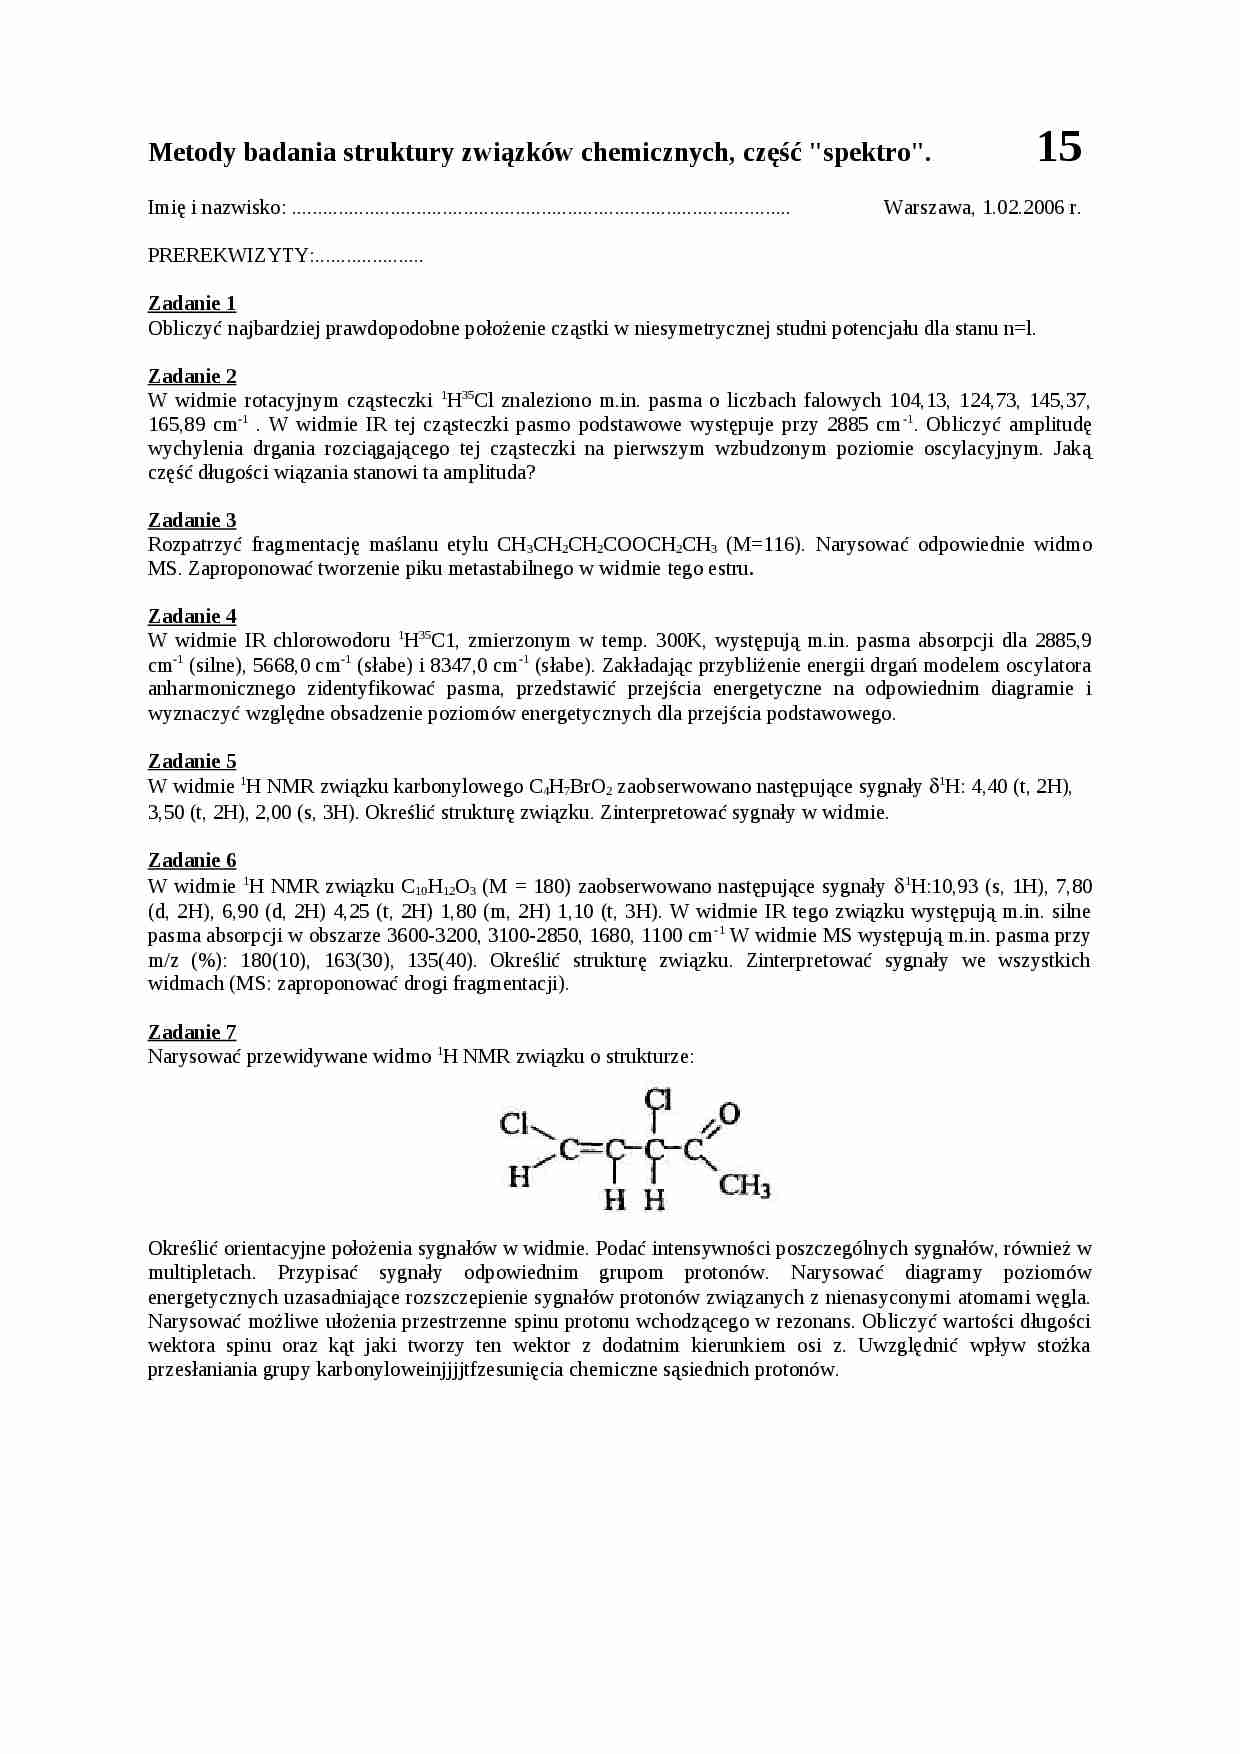 Metody badania struktury związków chemicznych - wykład cz. 15 - strona 1